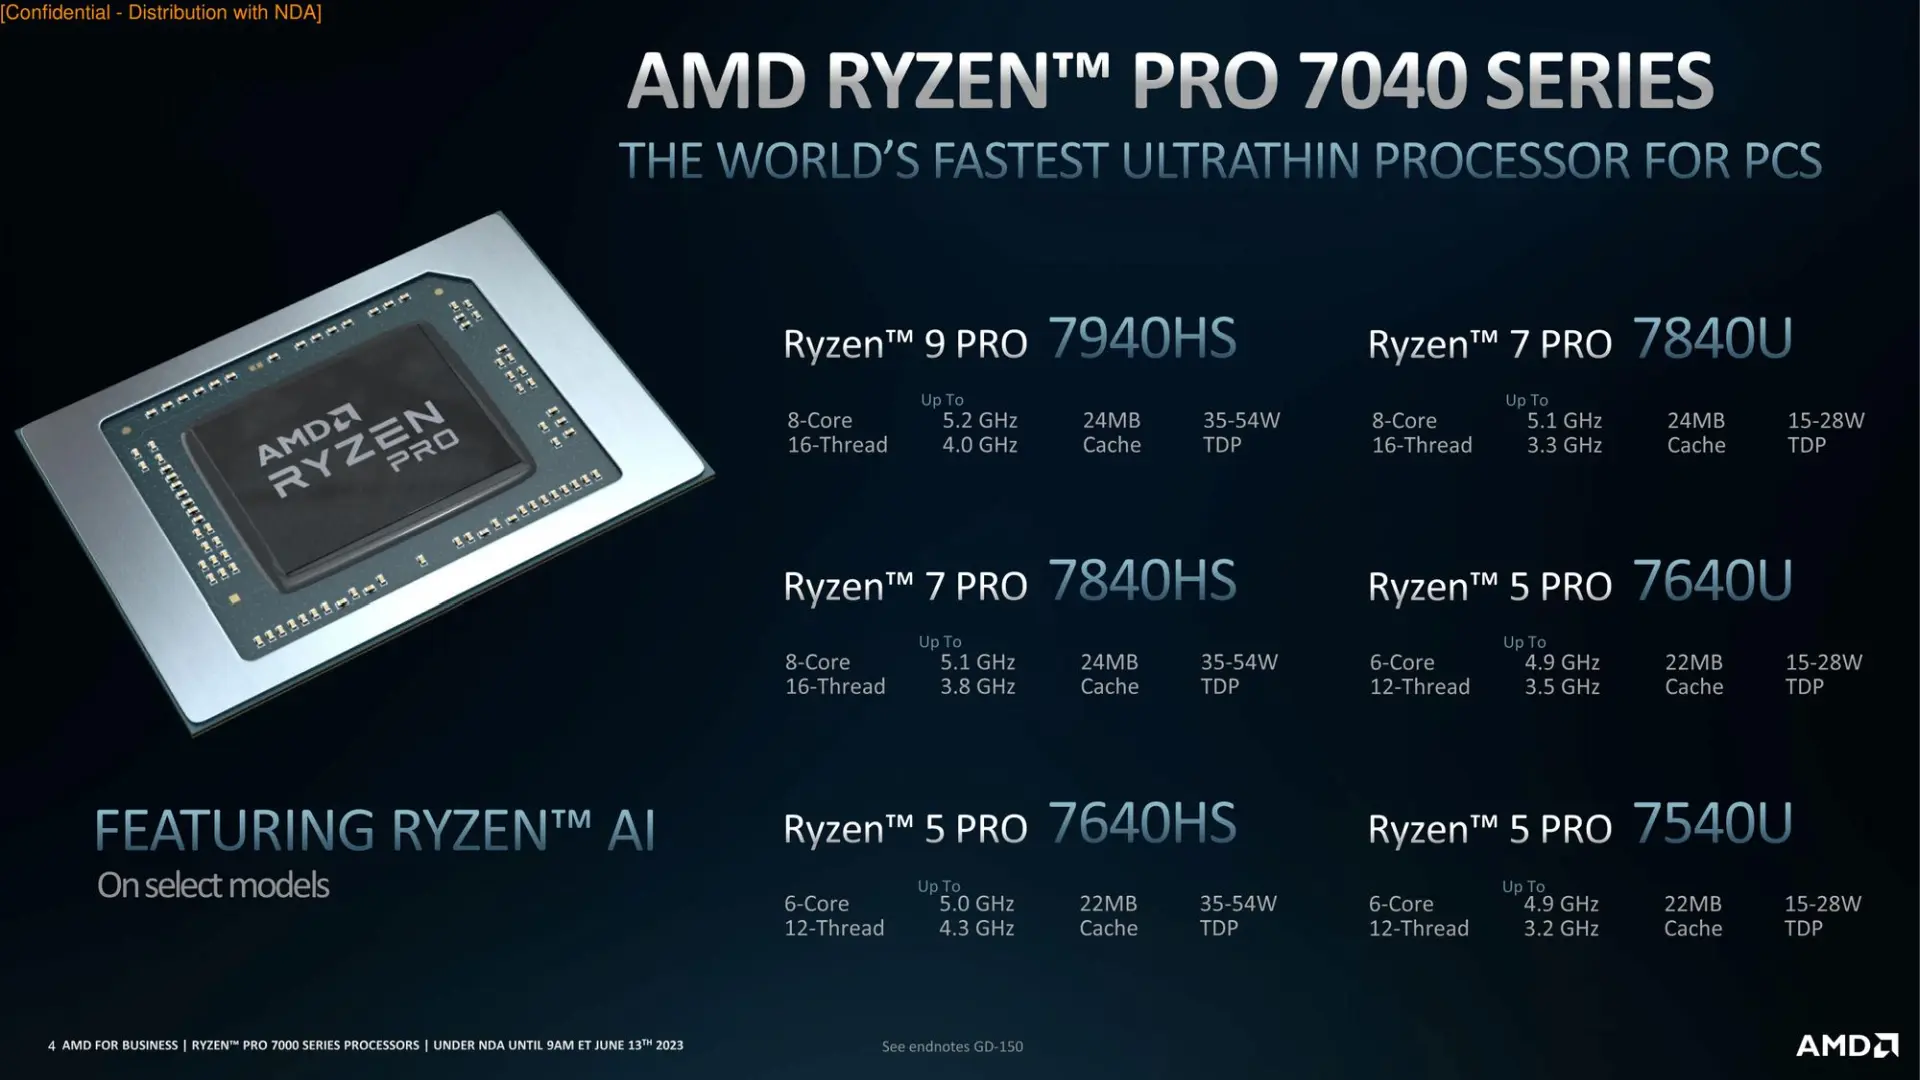 Annunciati i processori AMD Ryzen PRO 7000 desktop - modelli, specifiche e tecnologia Ryzen AI